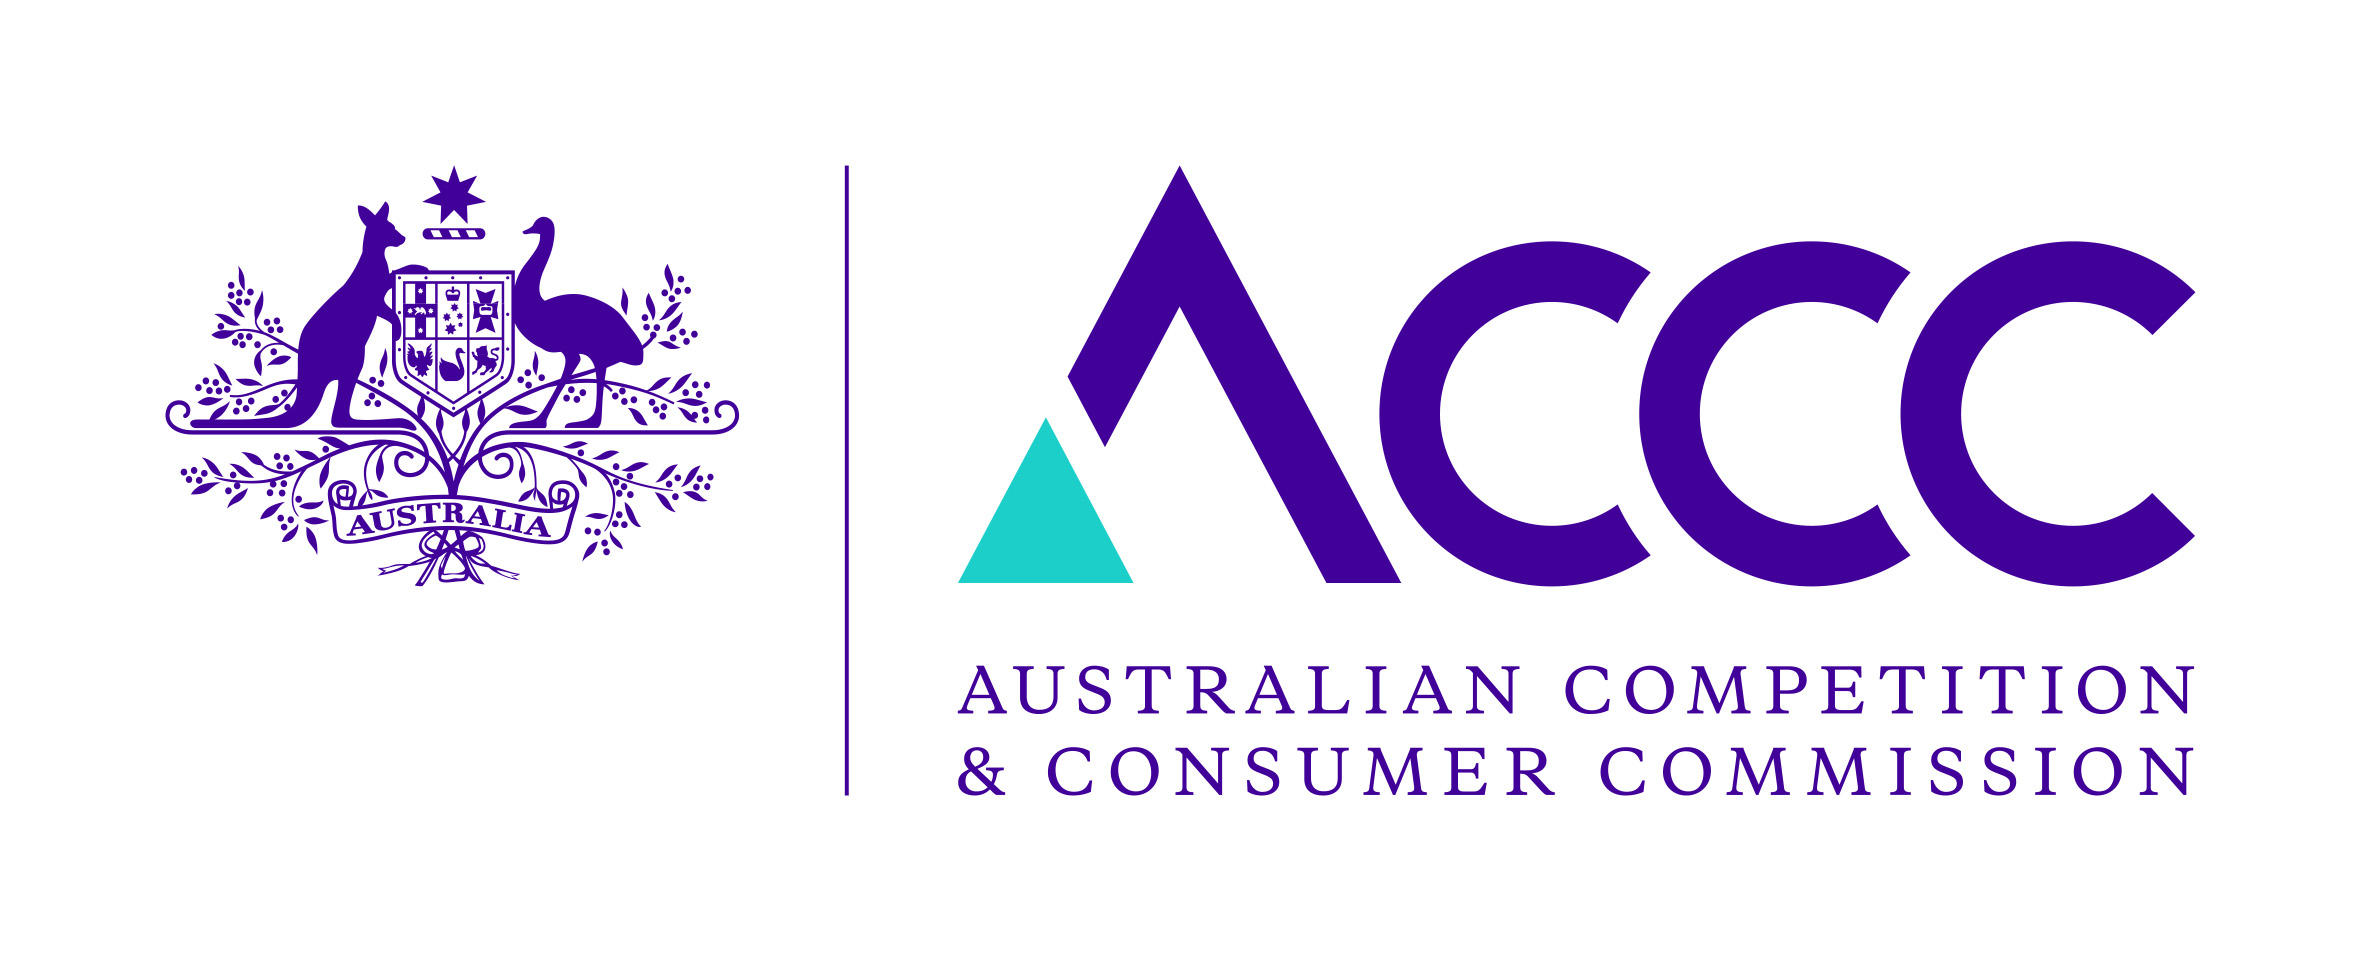 Logo della concorrenza australiana e della Commissione dei consumatori